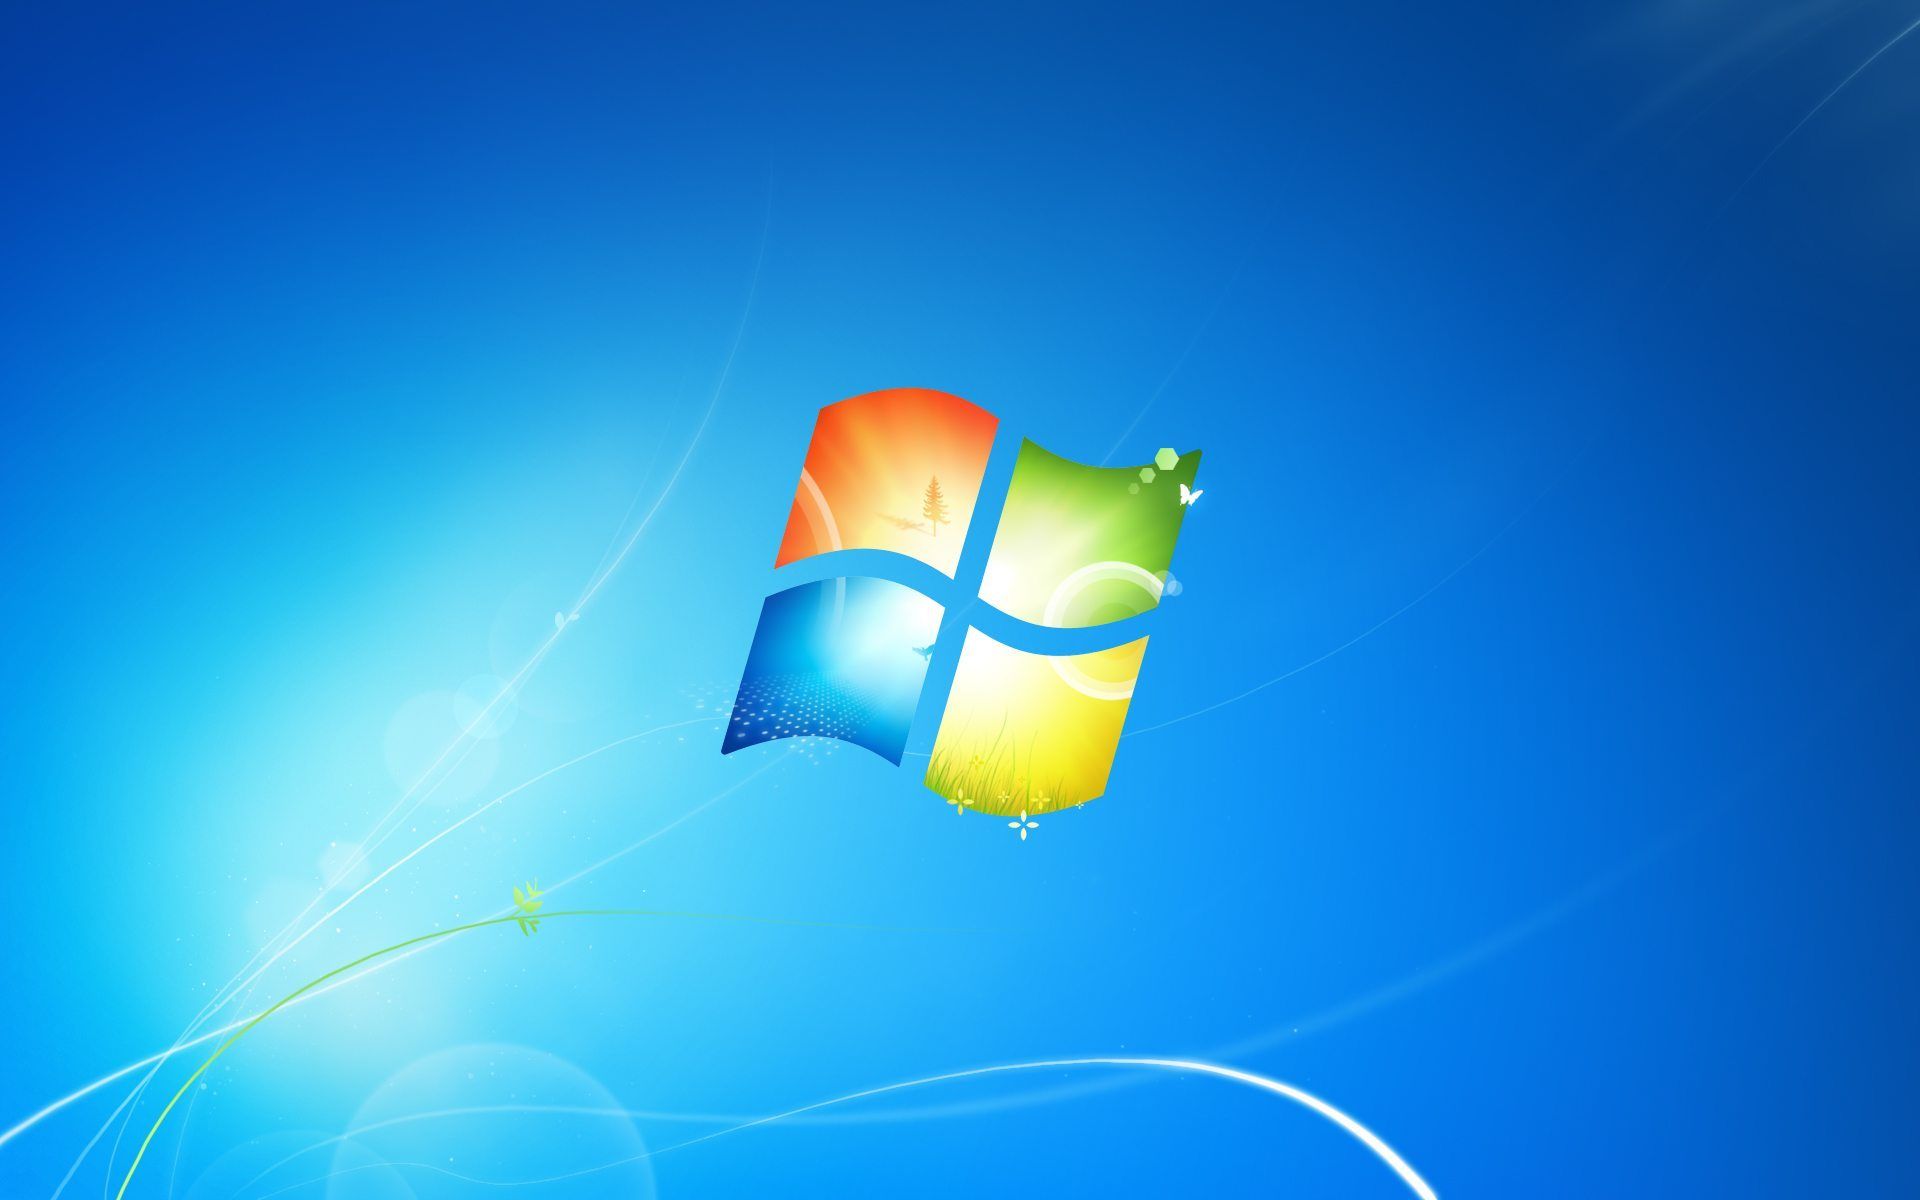 Download wallpapers Windows Vista, logo, blue background for desktop free.  Pictures for desktop free | Wallpaper windows 10, Windows wallpaper, Dark  wallpaper